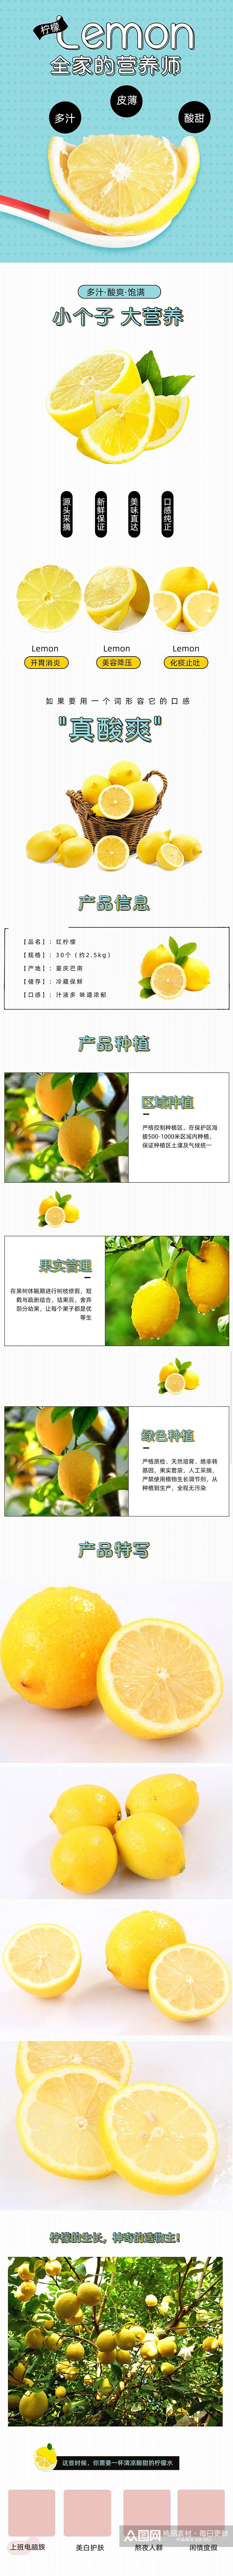 全家的营养师柠檬水果详情页素材